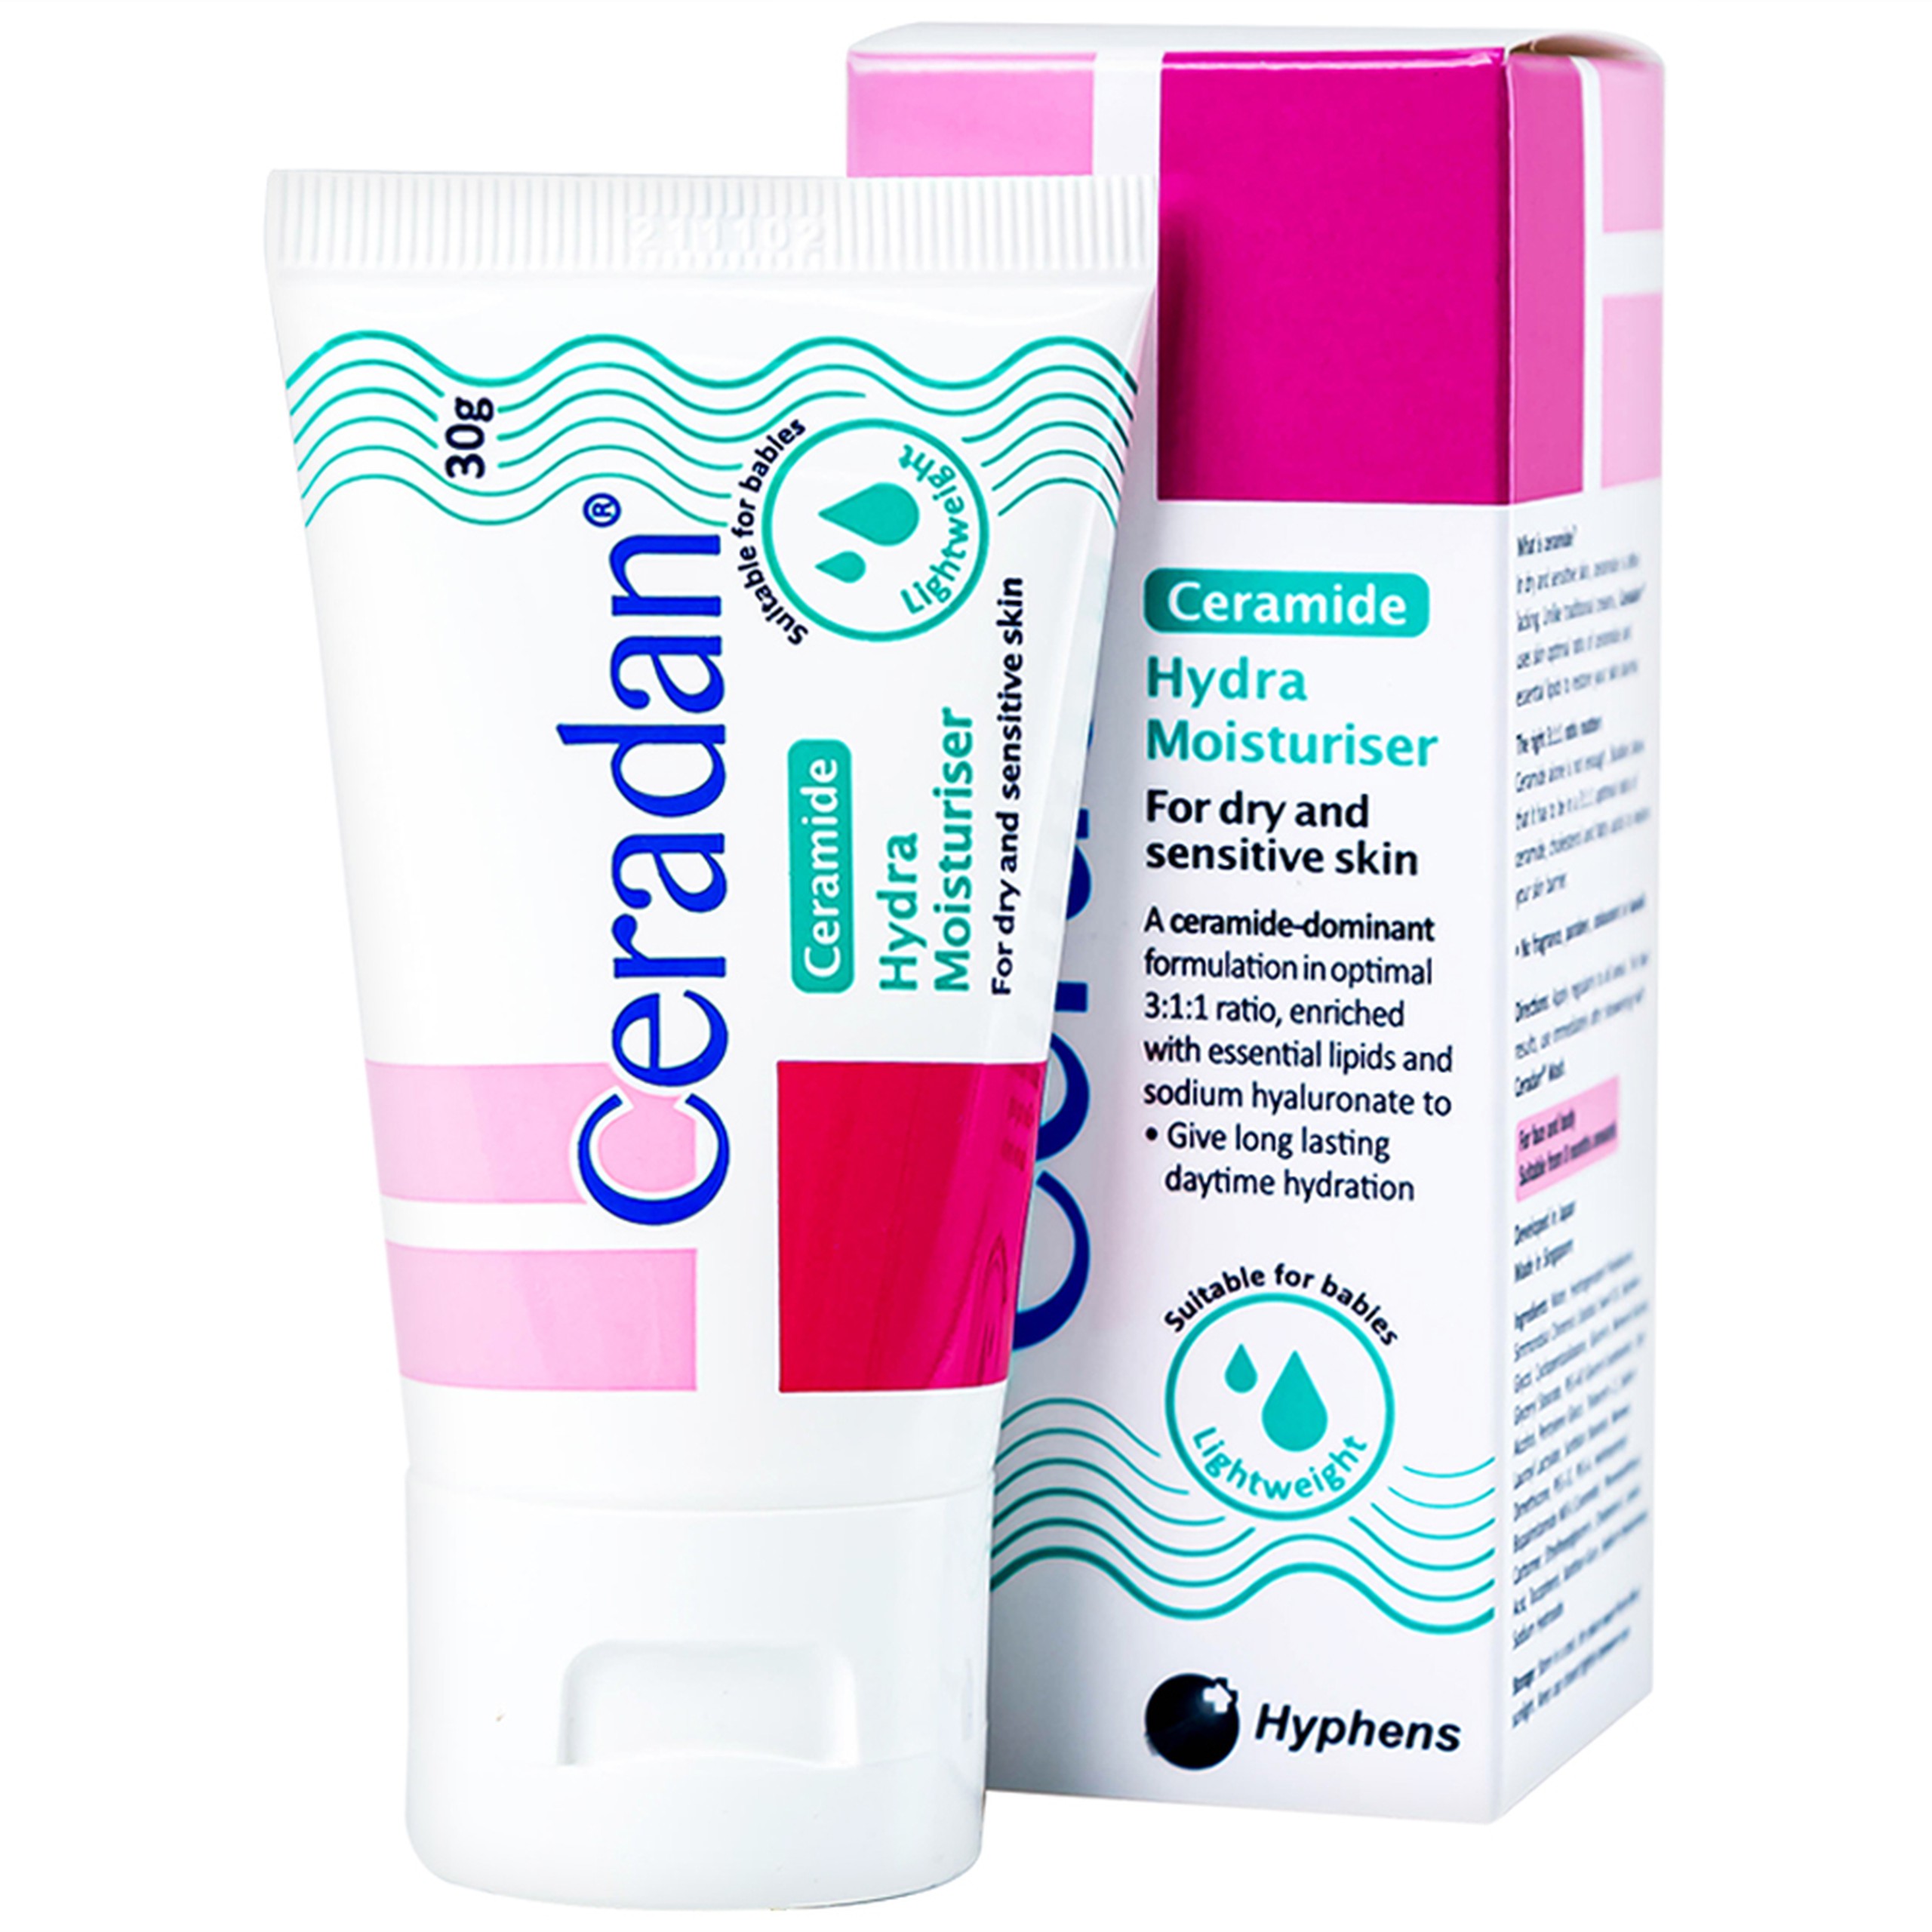 Kem dưỡng ẩm Ceradan Ceramide Hydra Moisturiser dành cho da khô và nhạy cảm (30g)